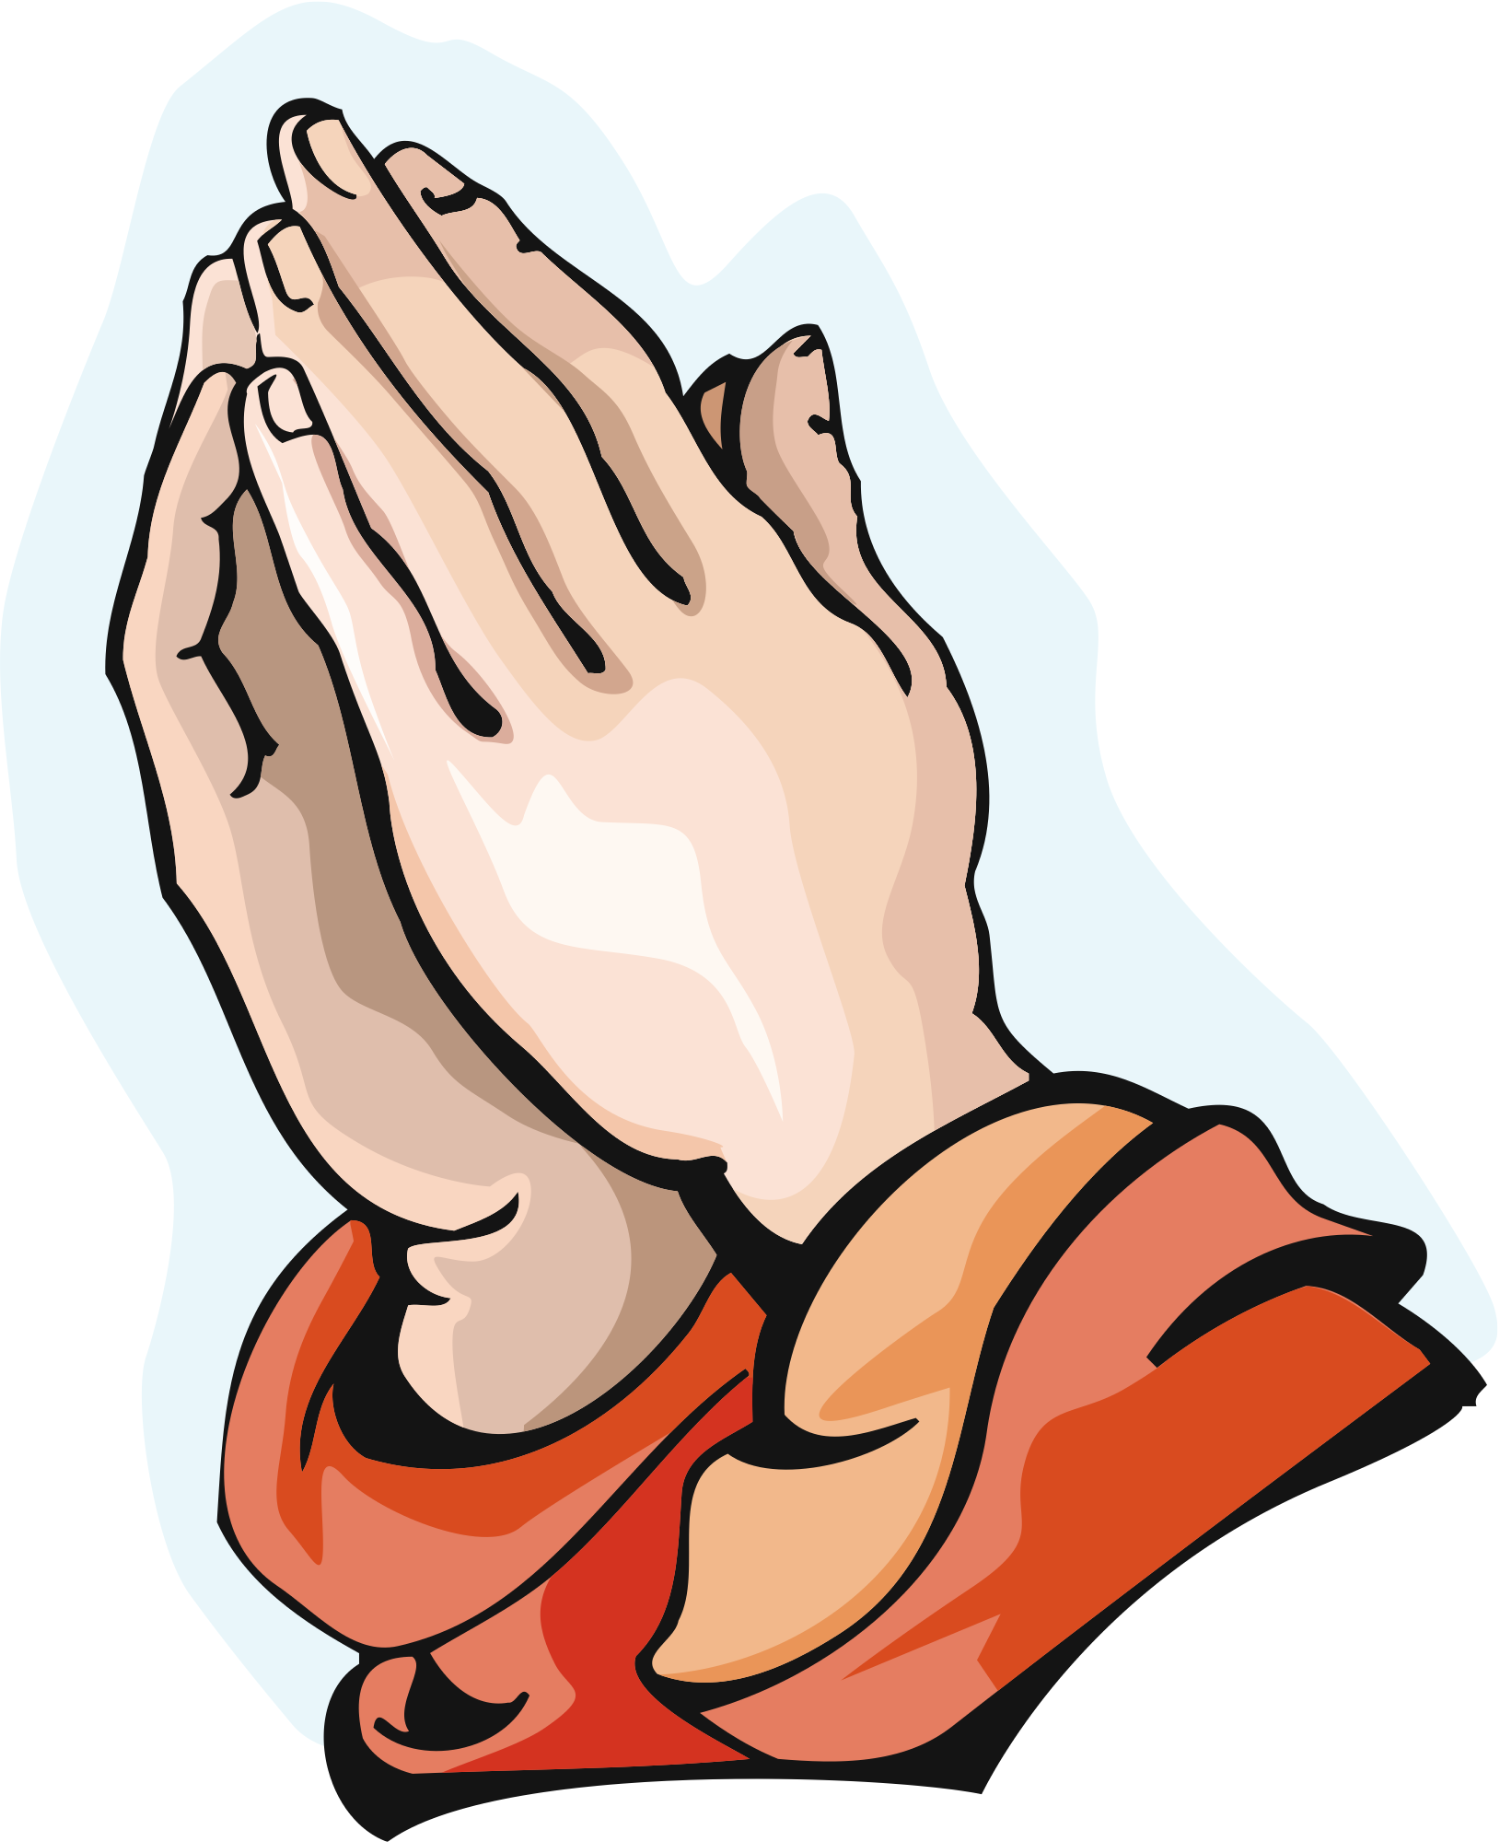 हाथ जोड़कर प्रार्थना करना